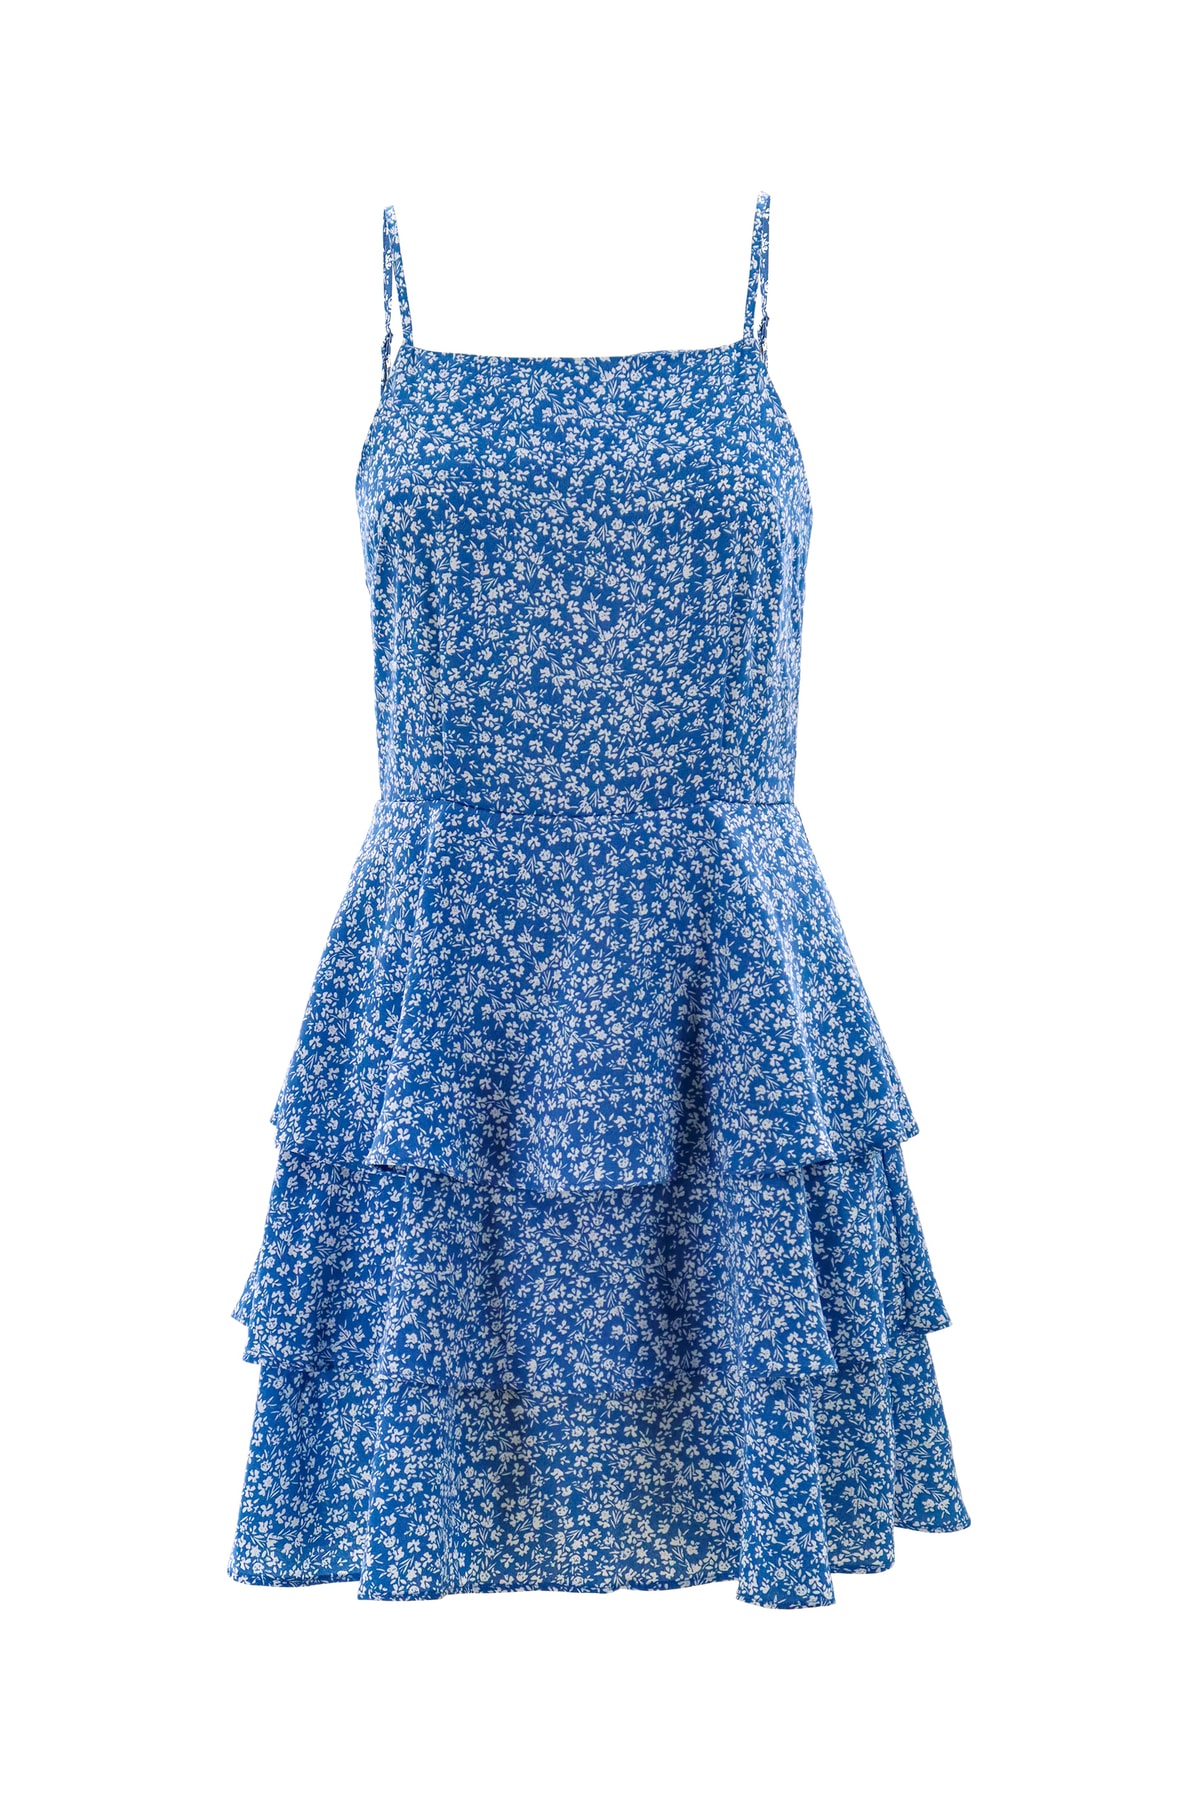 AIKI KEYLOOK Kleid Blau Basic EH5591